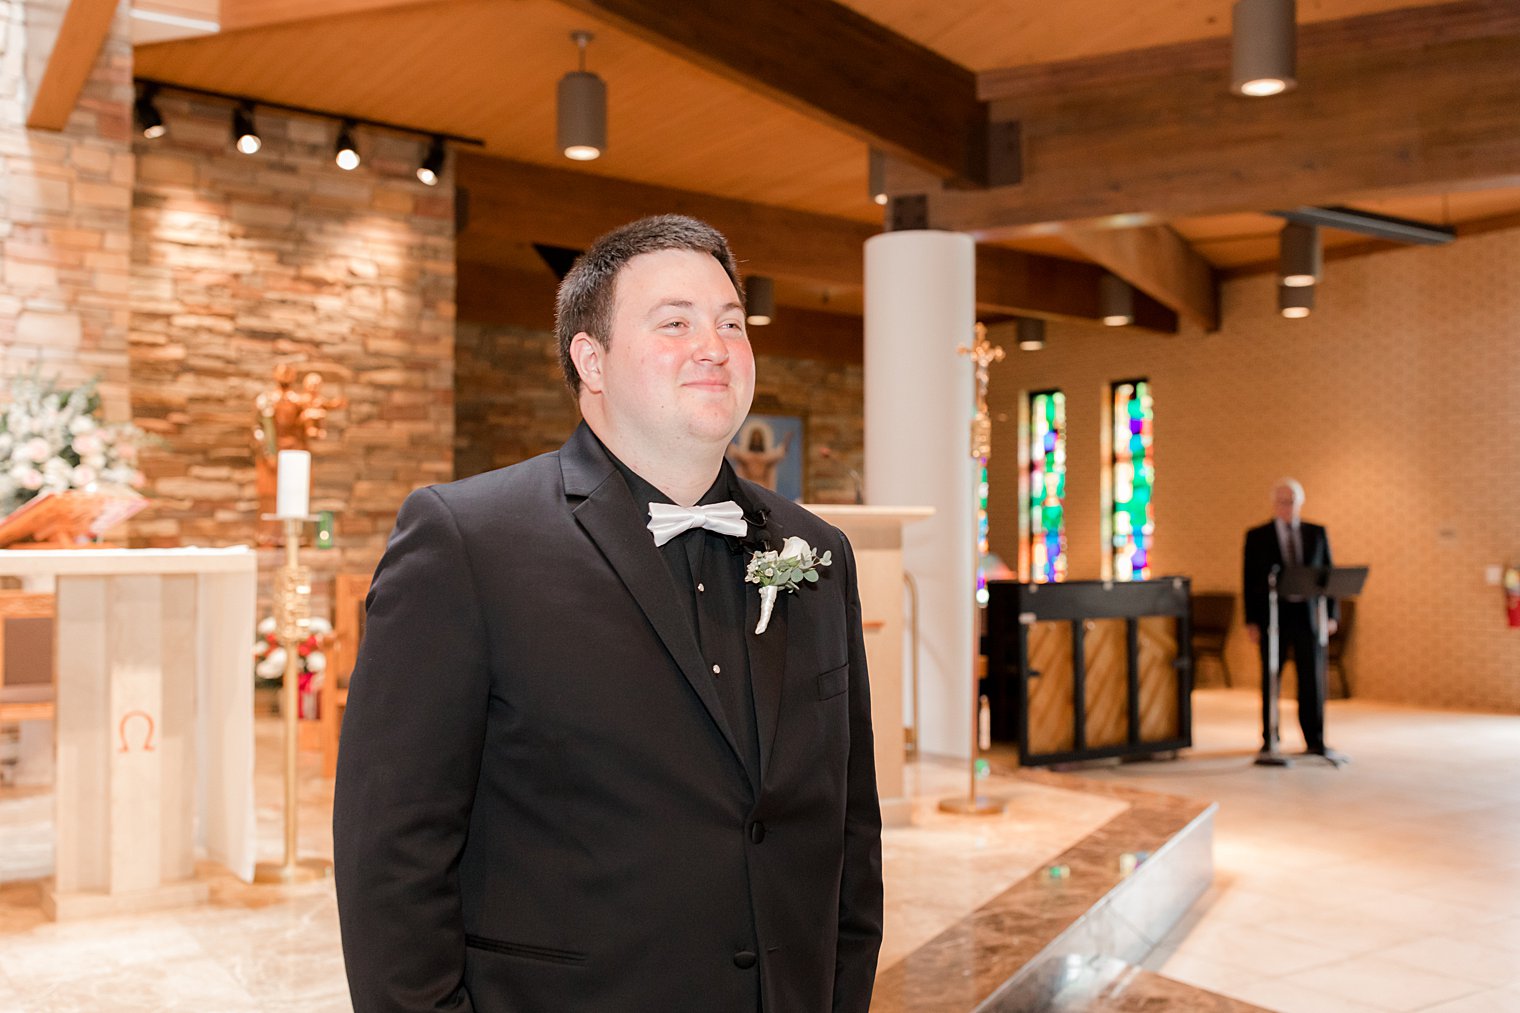 groom smiles looking at bride walking down aisle in church